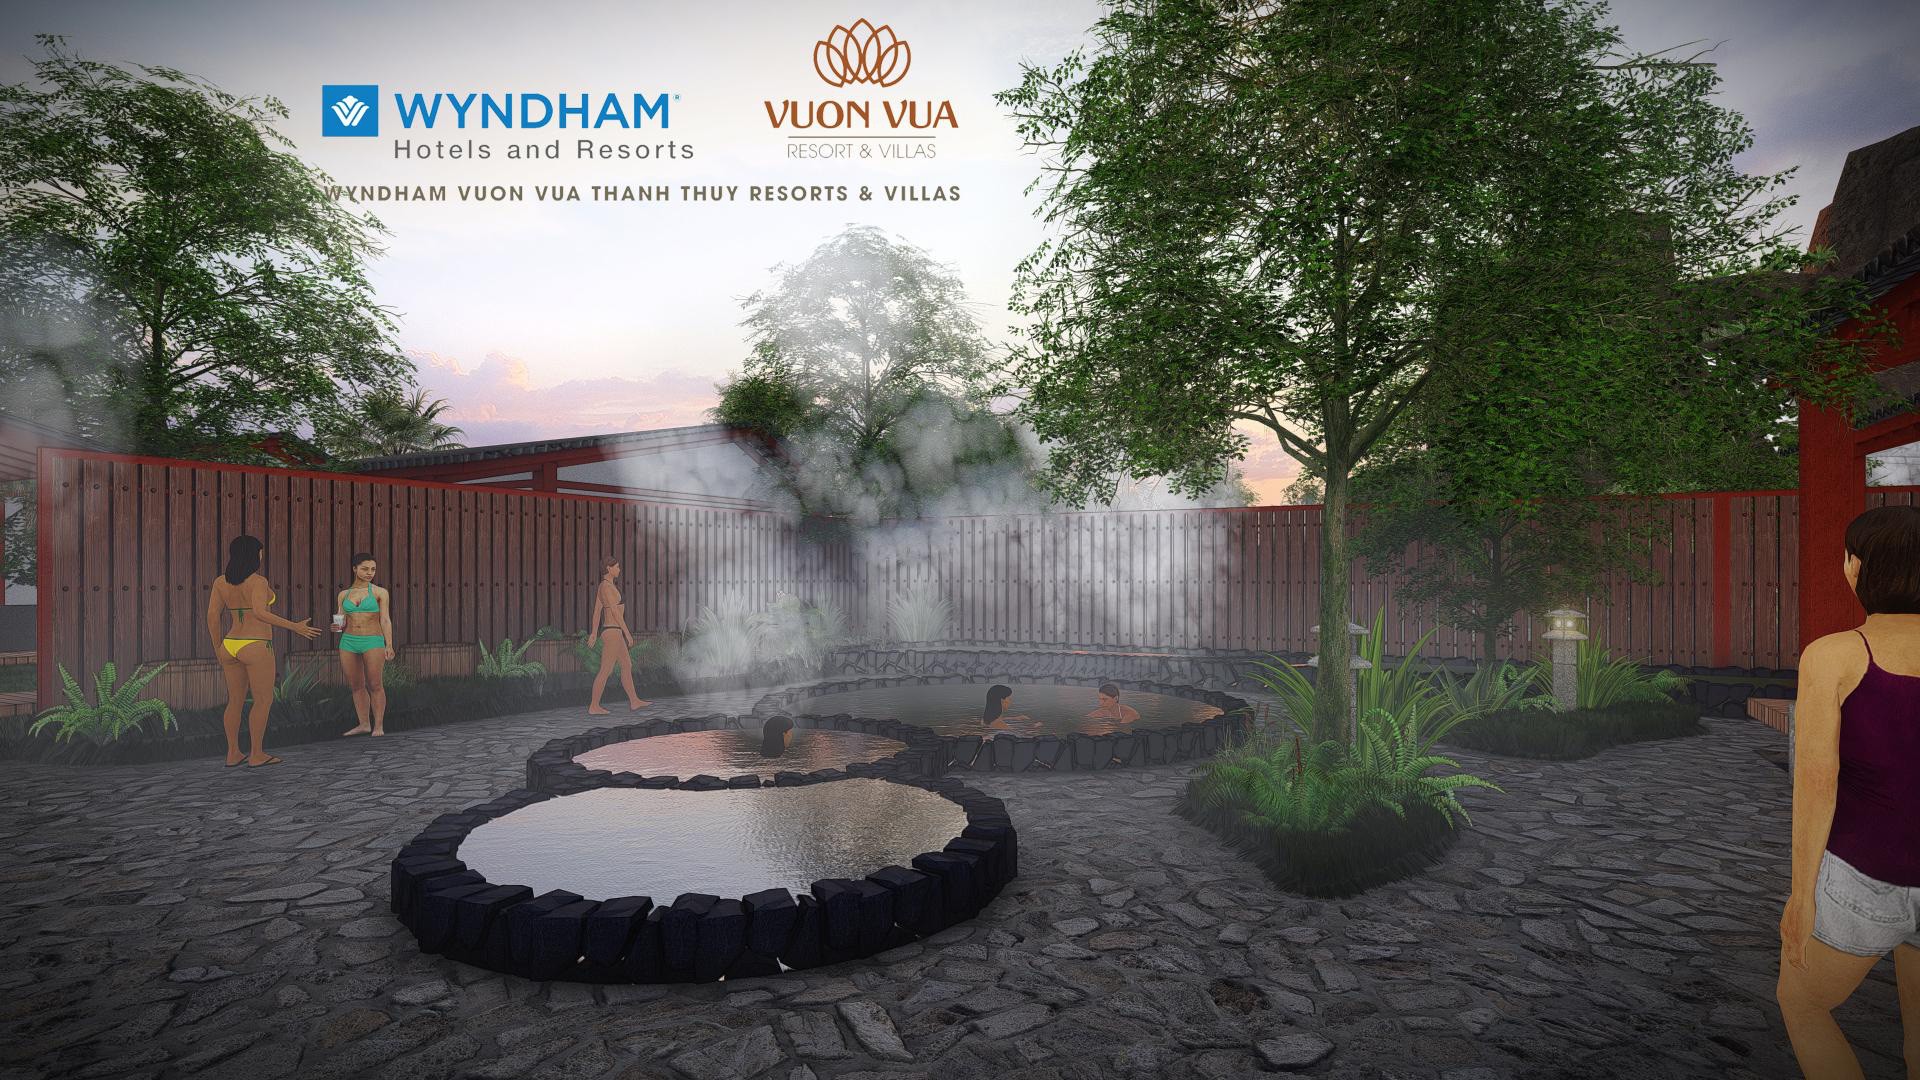 Vườn Vua Resort & Villas ra mắt GĐ2 - biệt thự 5 sao Wyndham Vườn Vua Thanh Thủy - Ảnh 2.